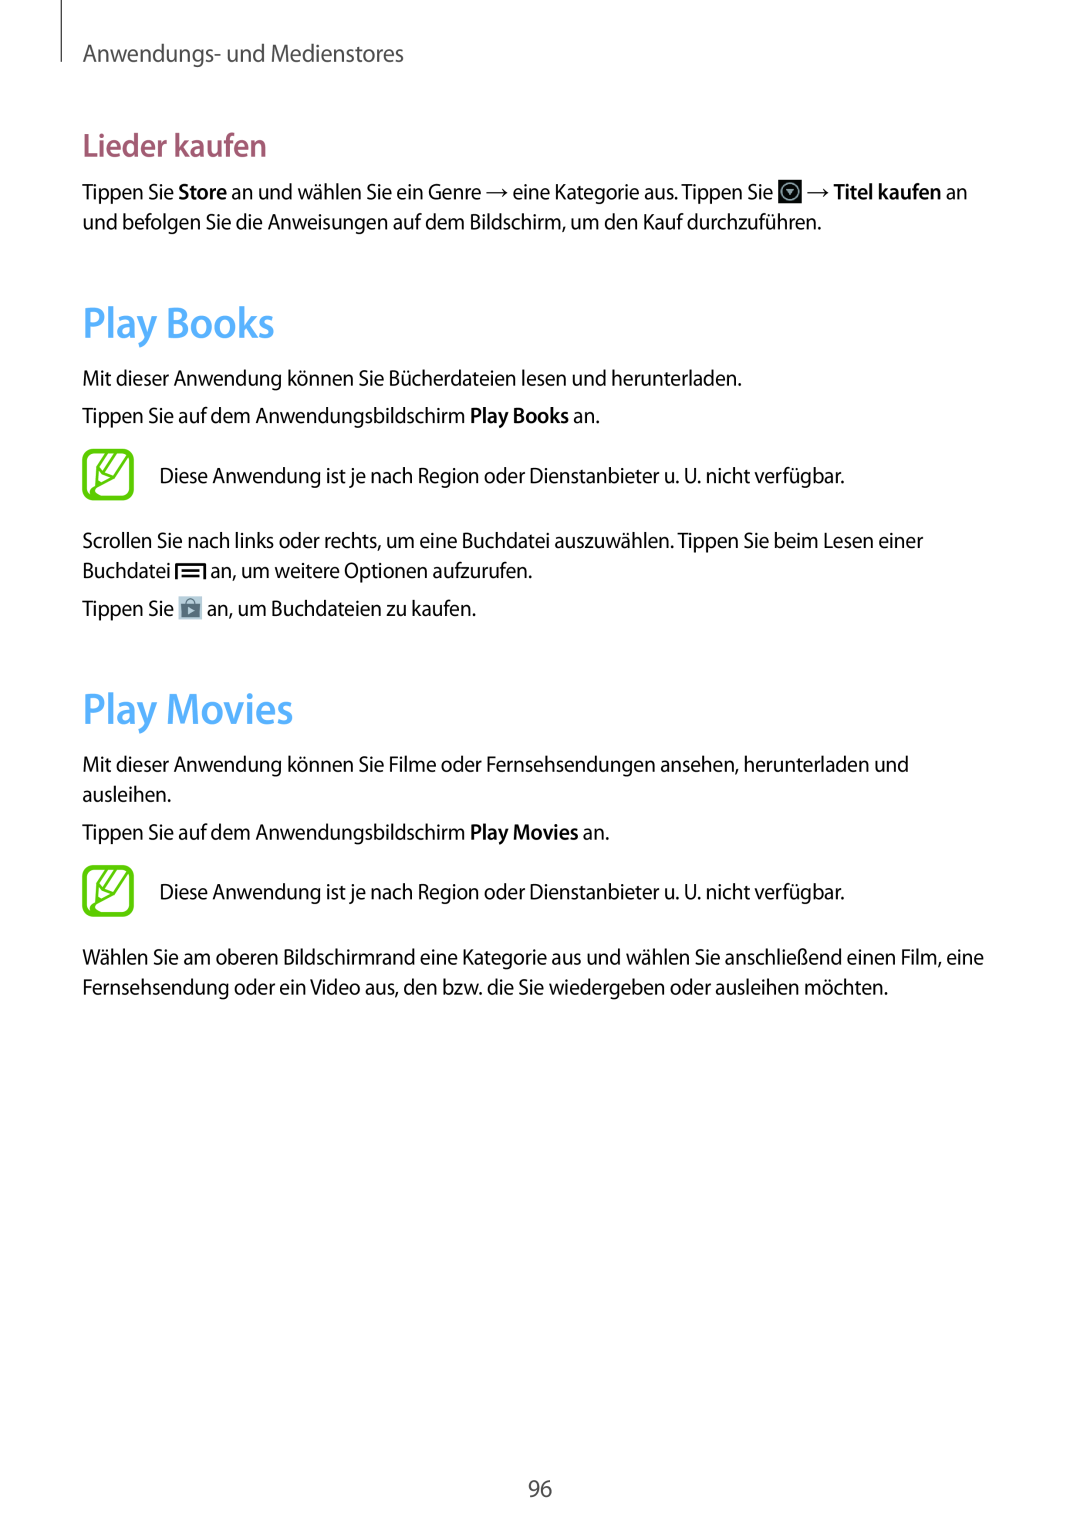 Samsung GT-N7100TADATO, GT-N7100ZNDTUR, GT-N7100ZBDTUR Play Books, Play Movies, Lieder kaufen, Anwendungs- und Medienstores 